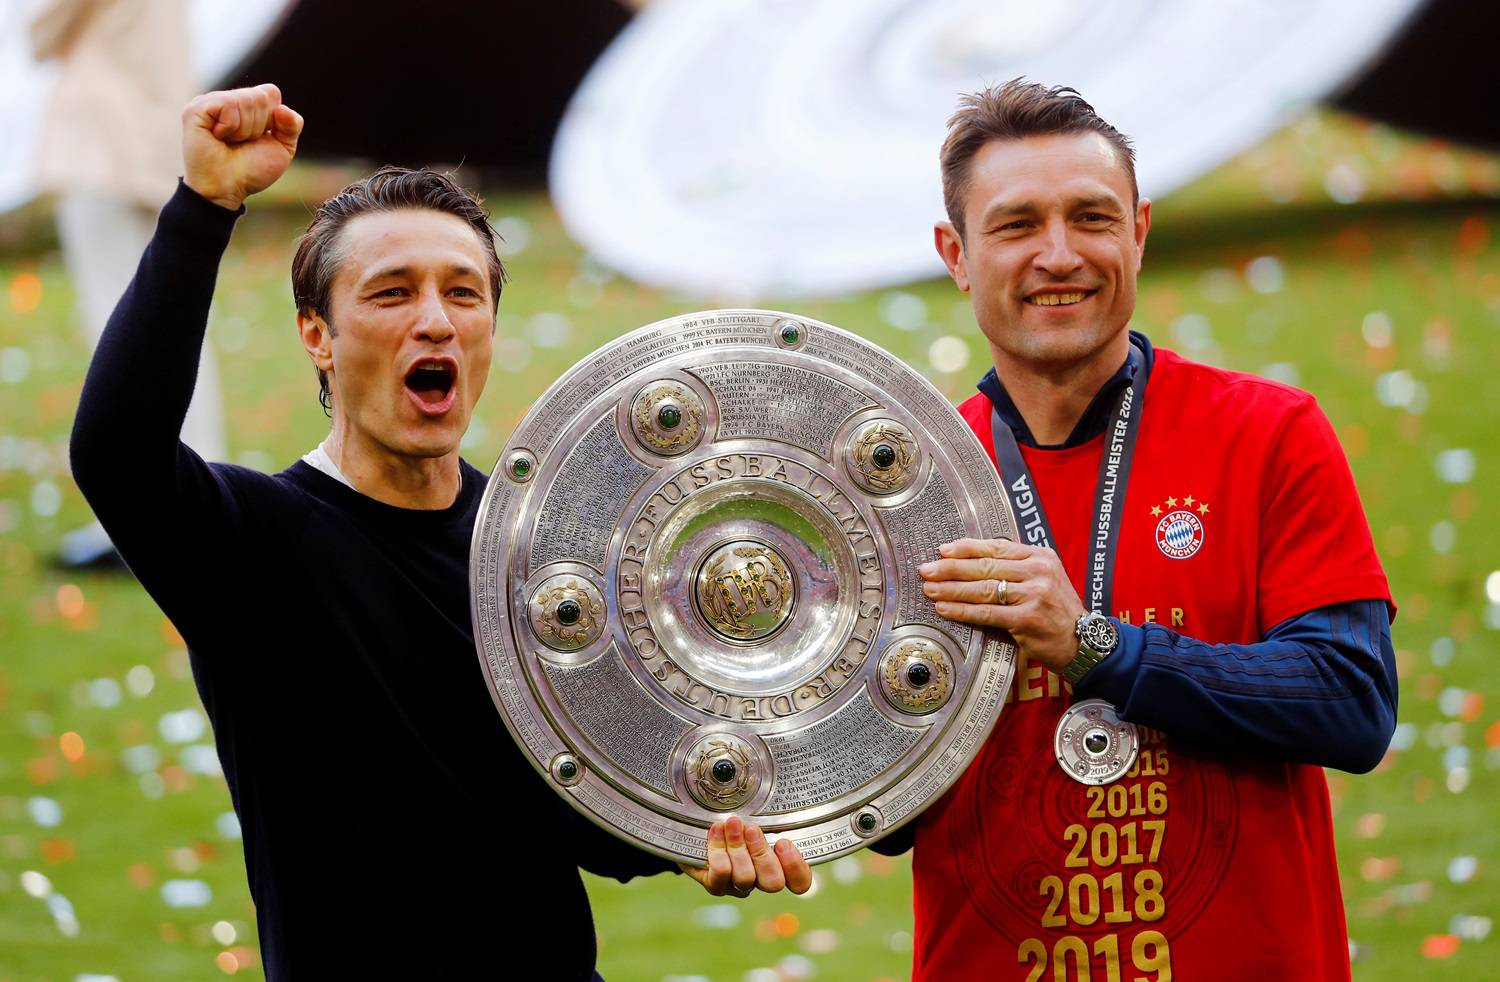 'Imam informacije iz prve ruke, ostajem u Bayernu i dogodine!'